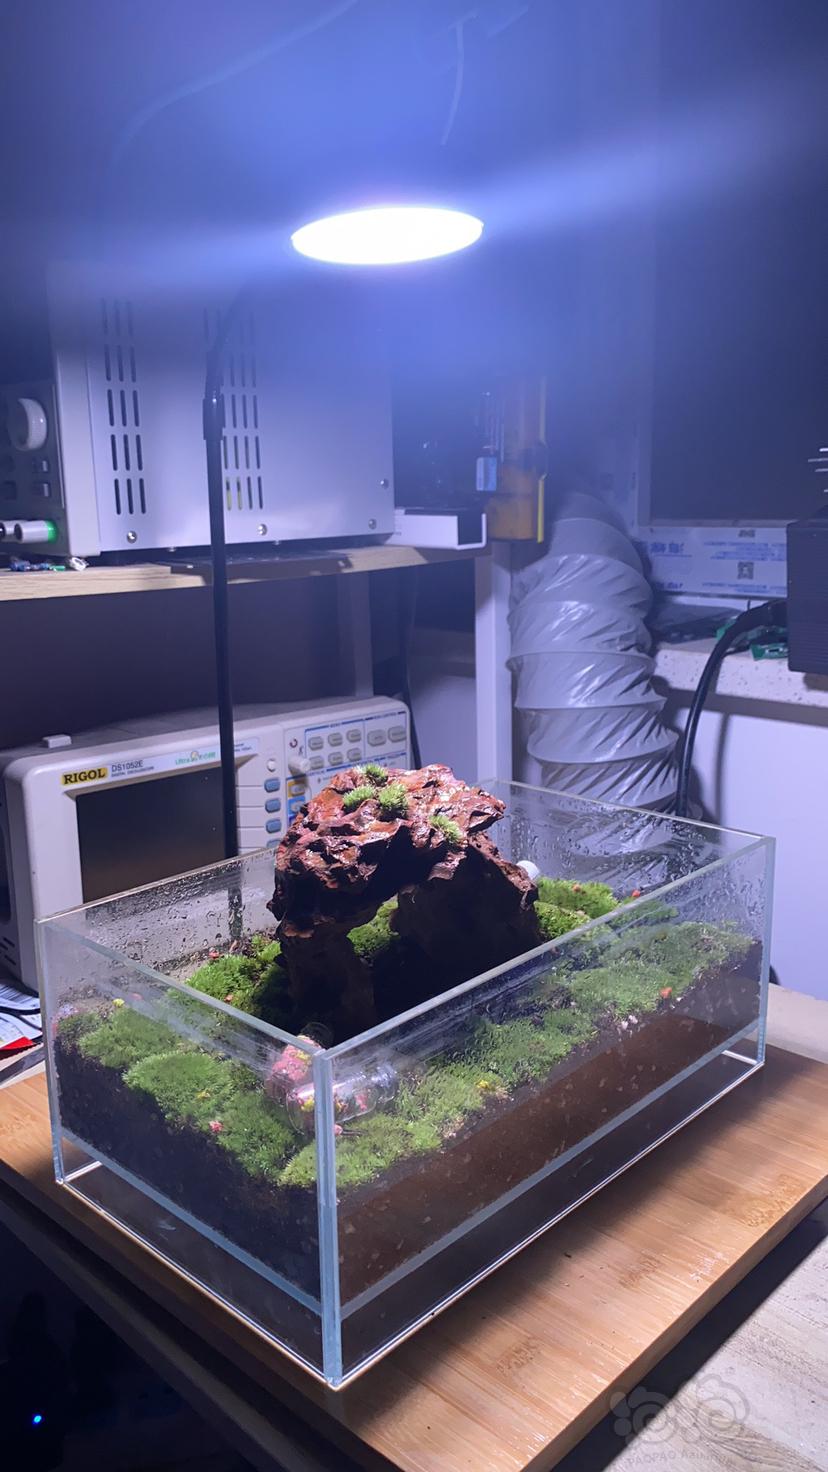 老婆给自己的苔藓缸做了个灯-图8